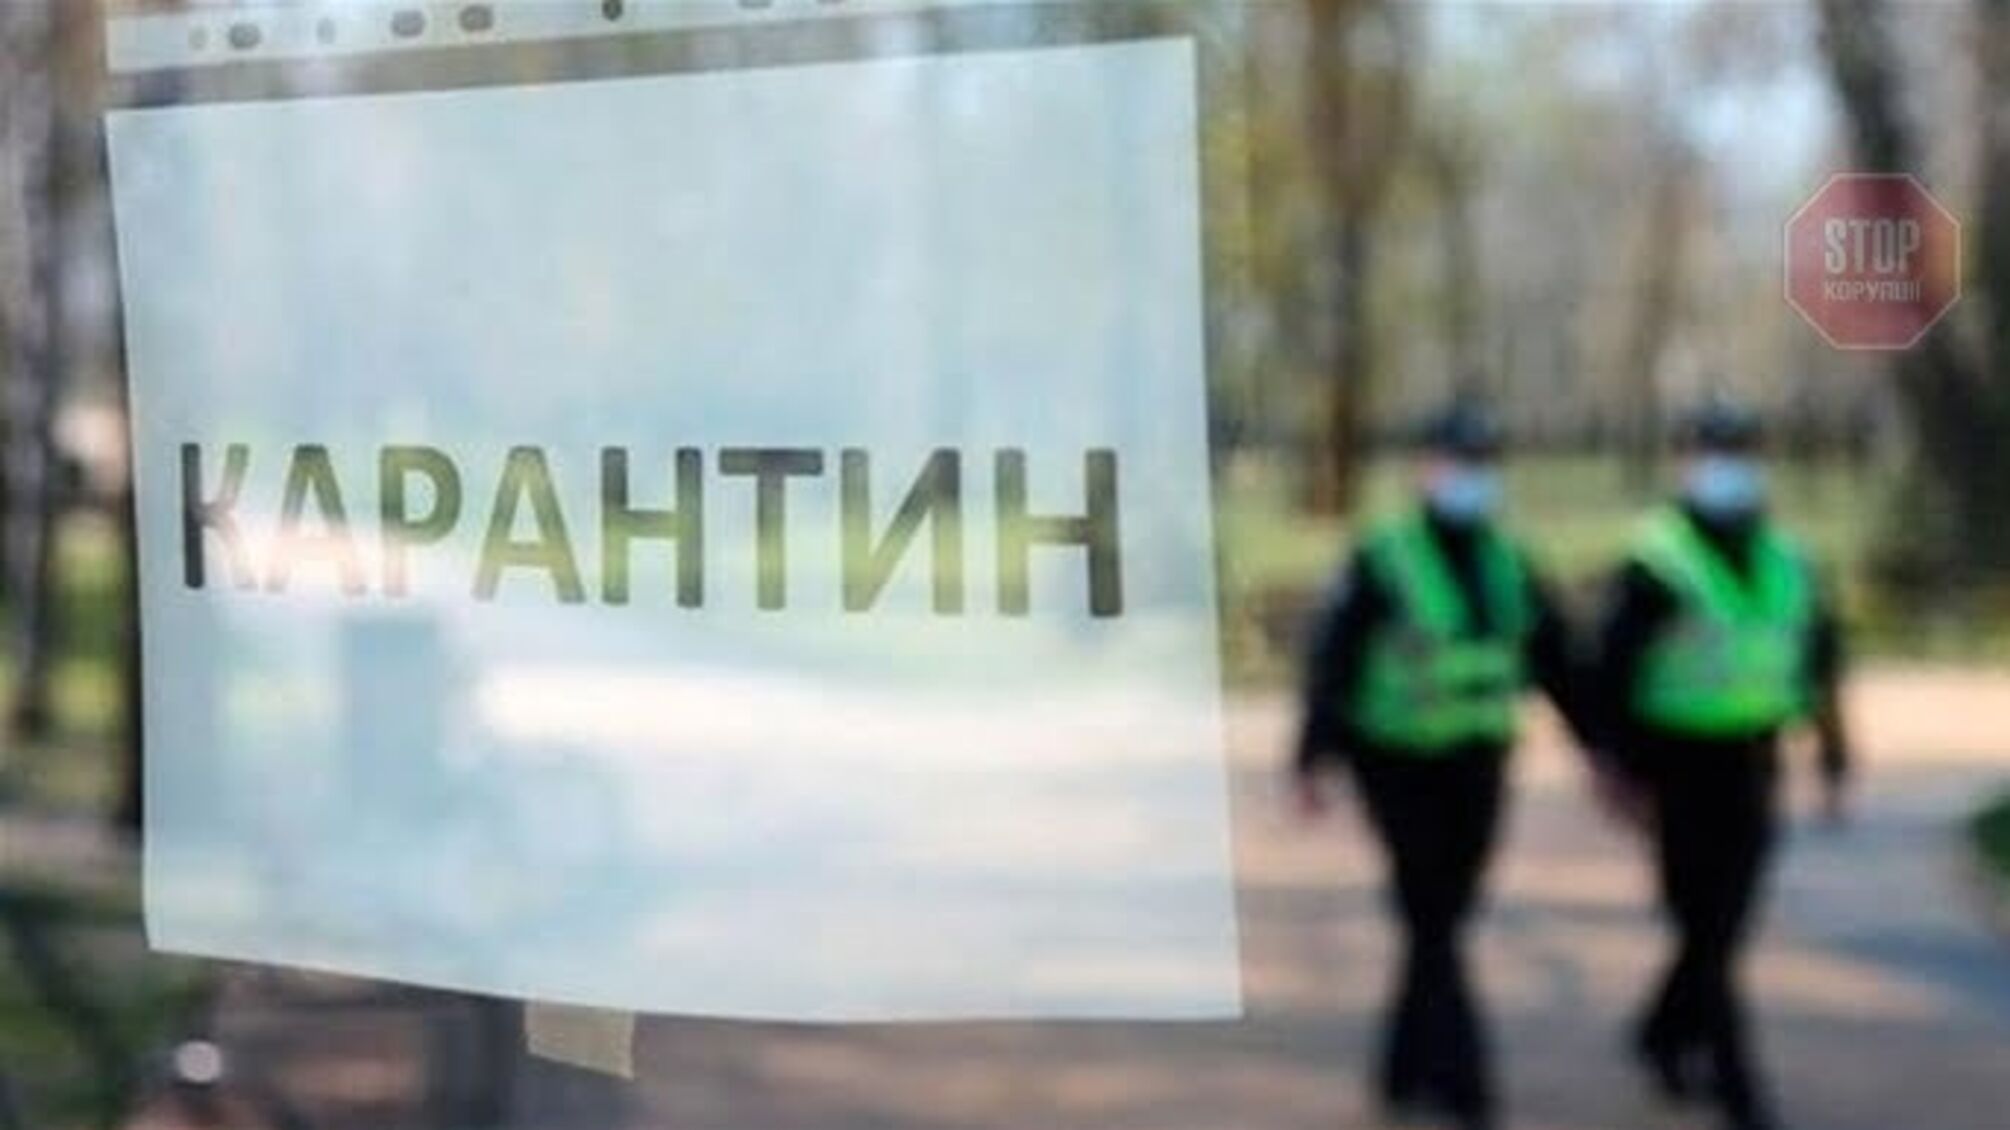 Кабинет Министров продлил карантин в Украине